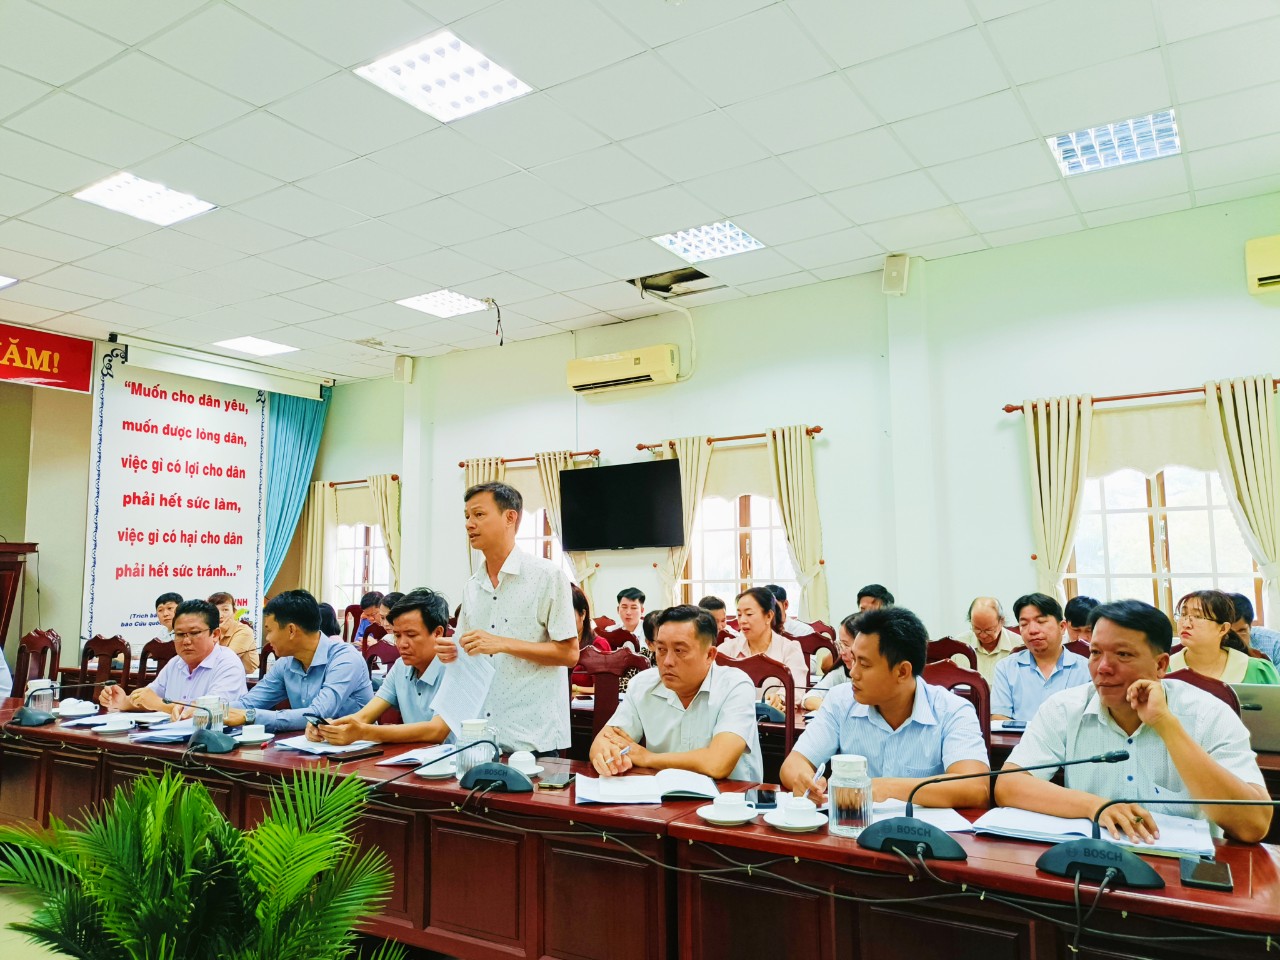 Đồng chí Phan Ngọc Hồi, Bí thư Đảng uỷ xã Truông Mít phát biểu thảo luận